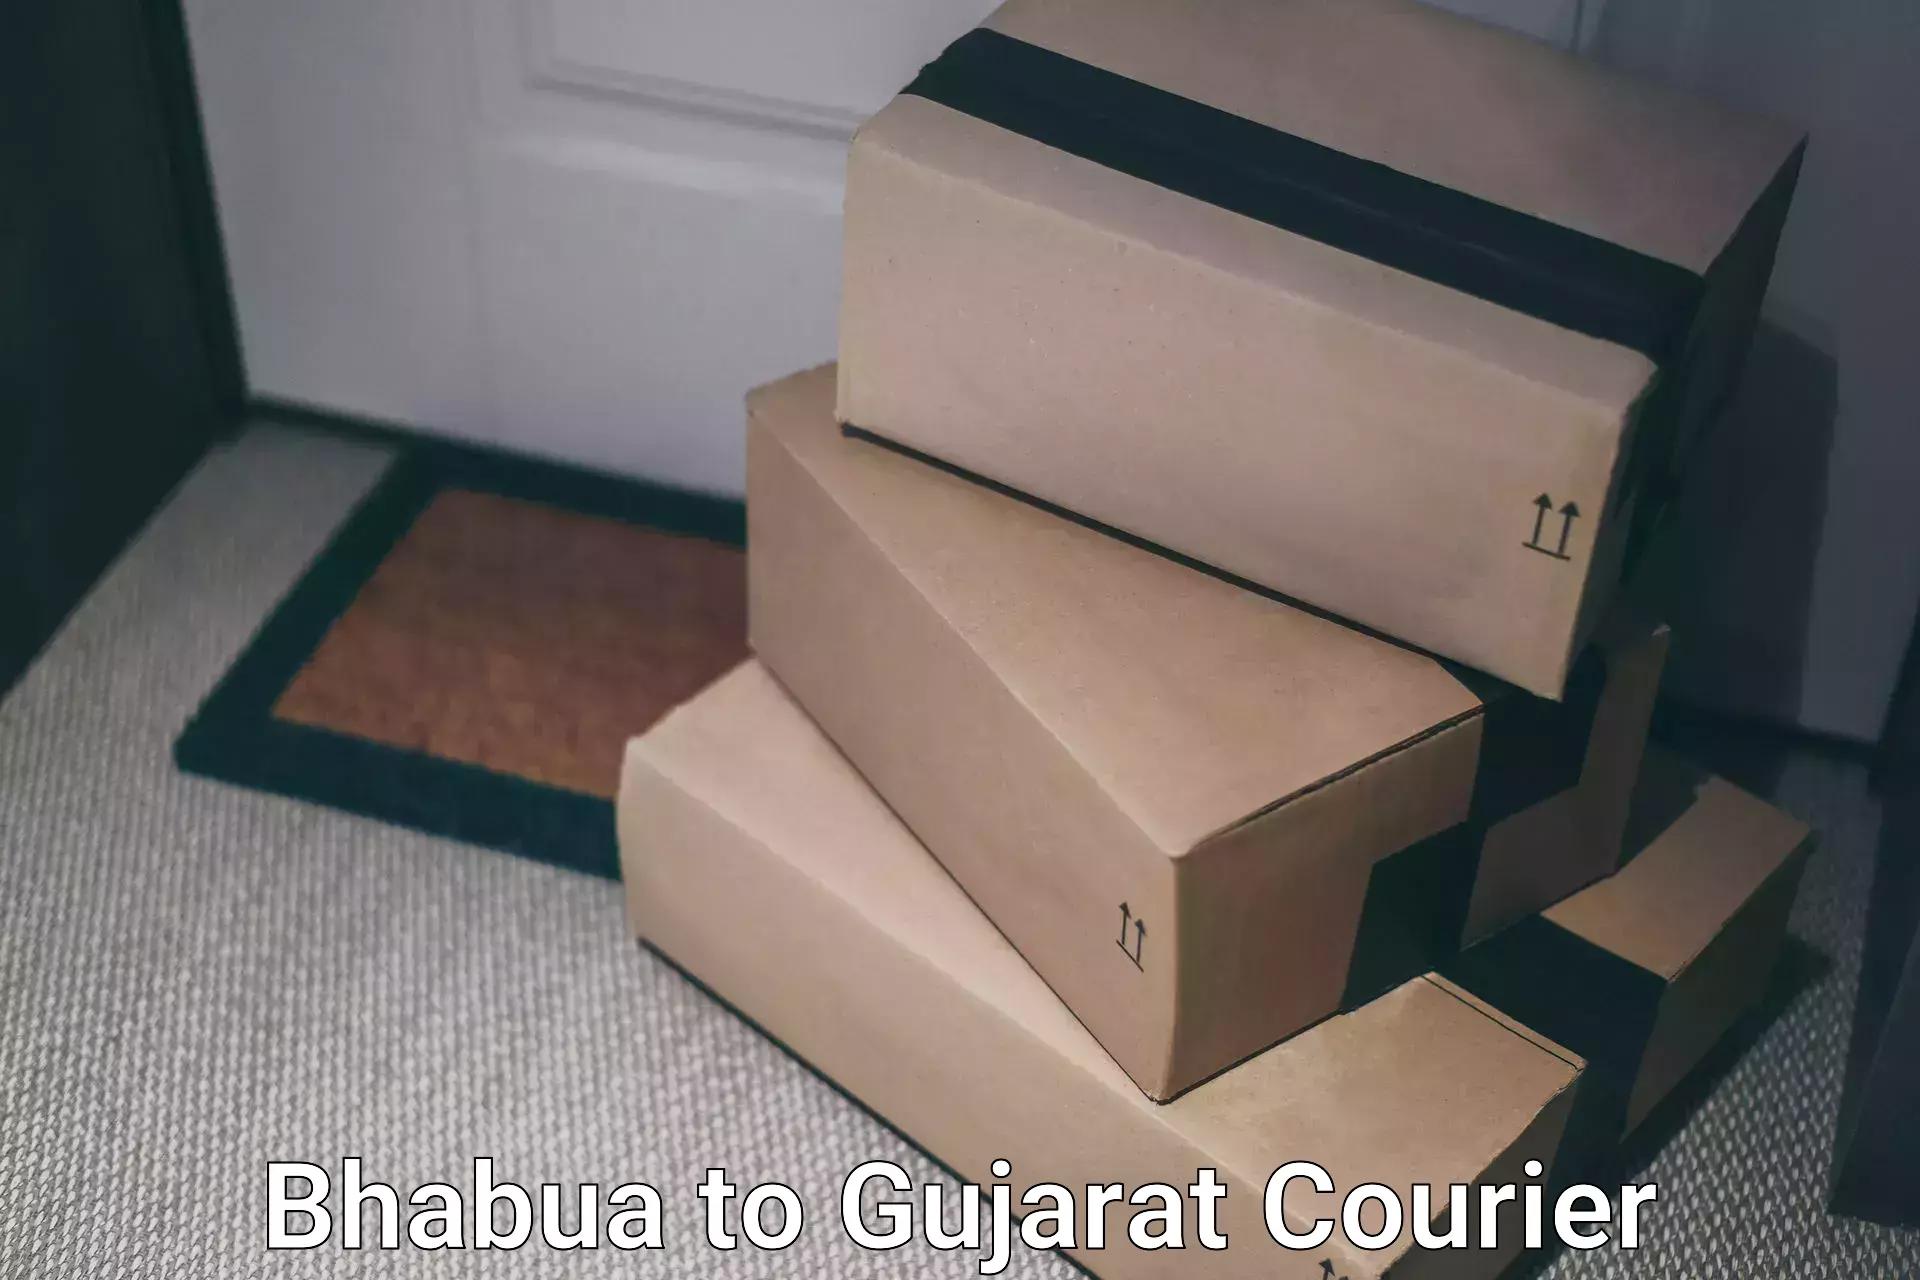 Seamless shipping experience Bhabua to Gandhidham